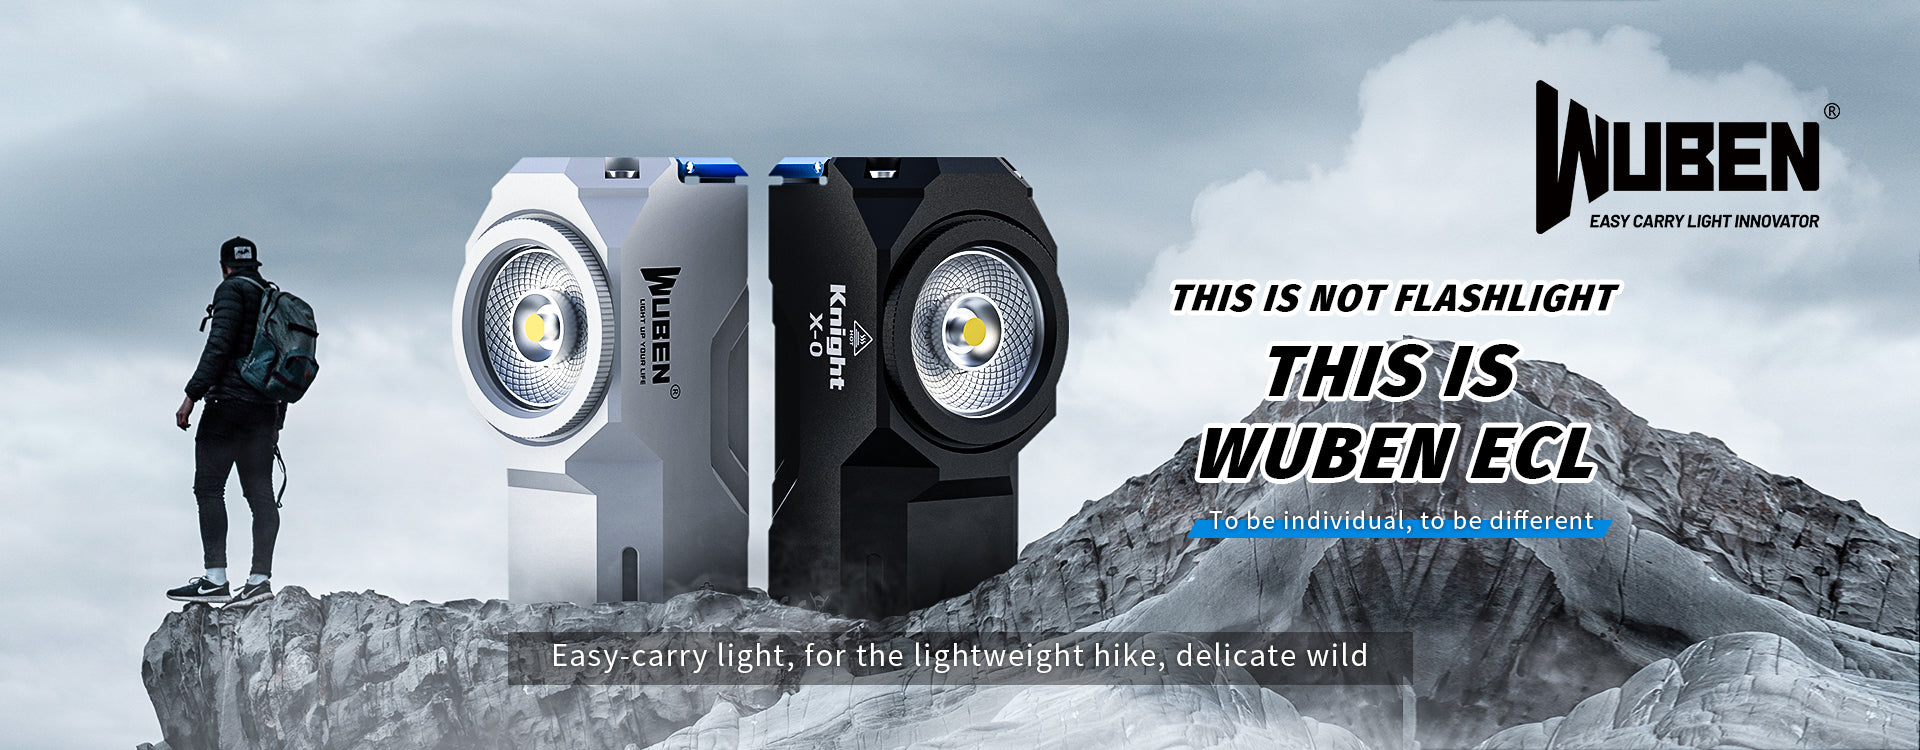 Easy-carry light, for the lightweight hike, delicate wild WUBEN Lightok X0 EDC